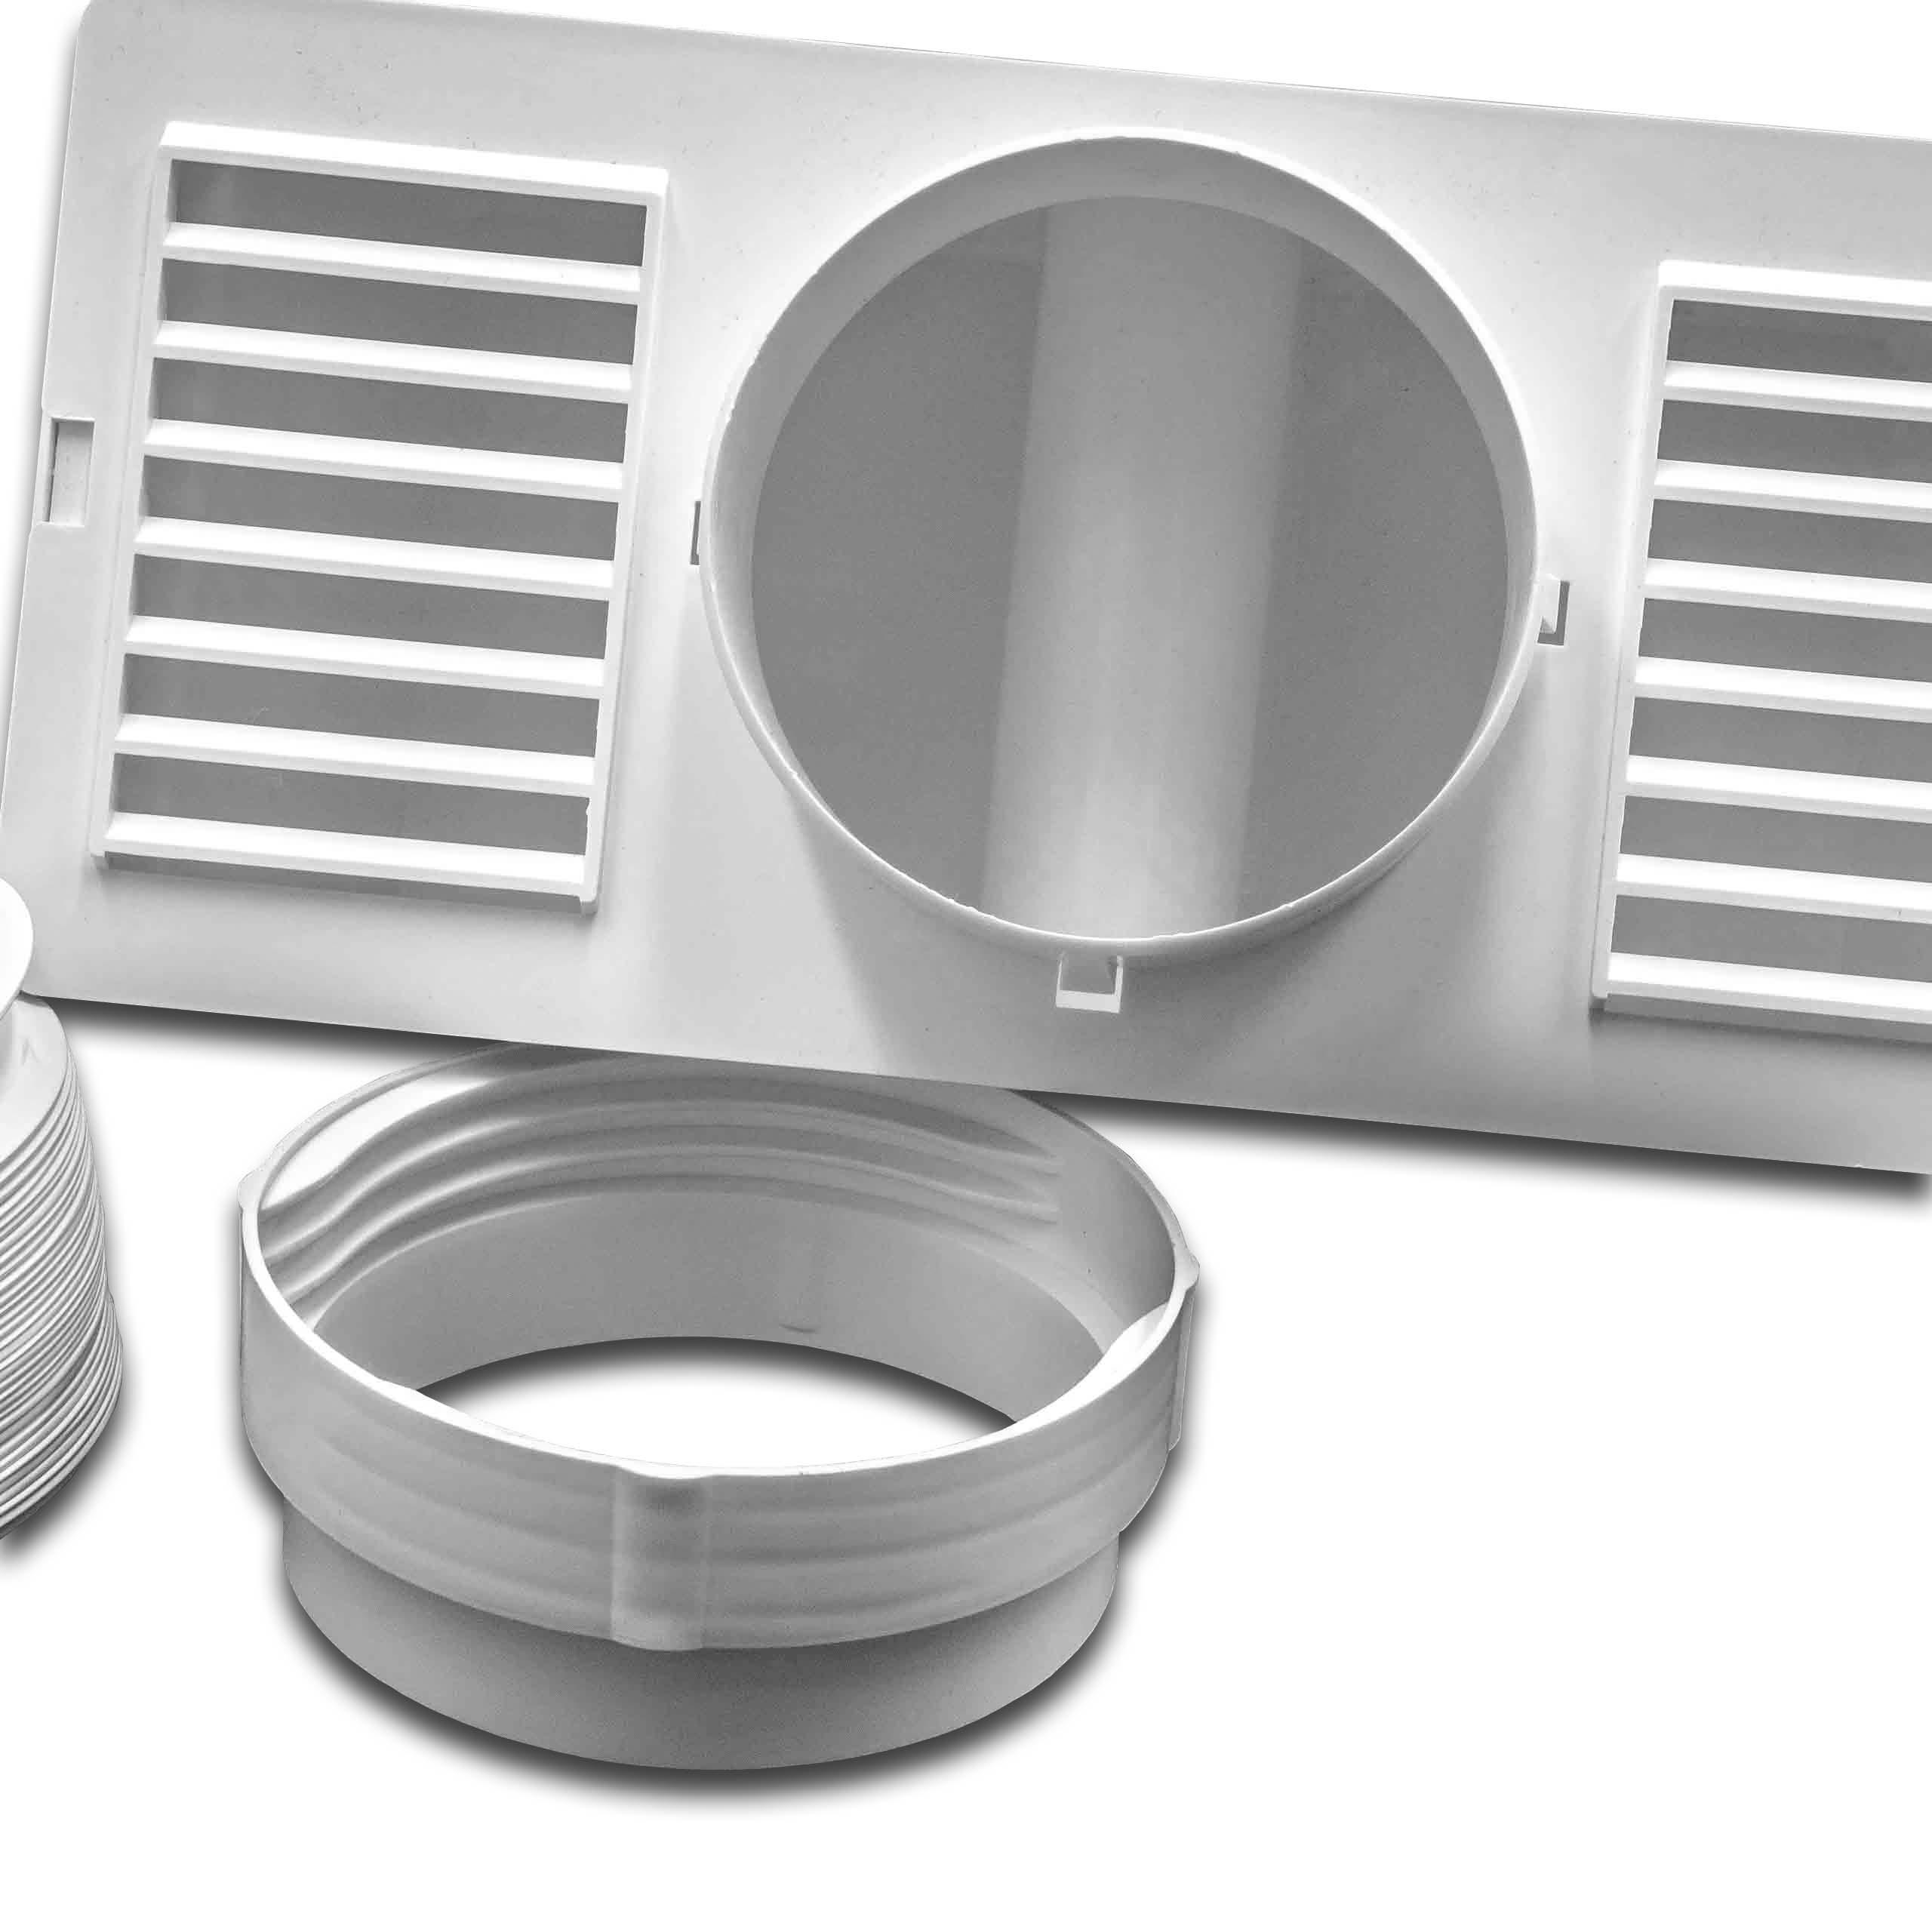 vhbw Condenseur compatible avec sèche-linge - Condensation avec tuyau d'évacuation et pince, blanc